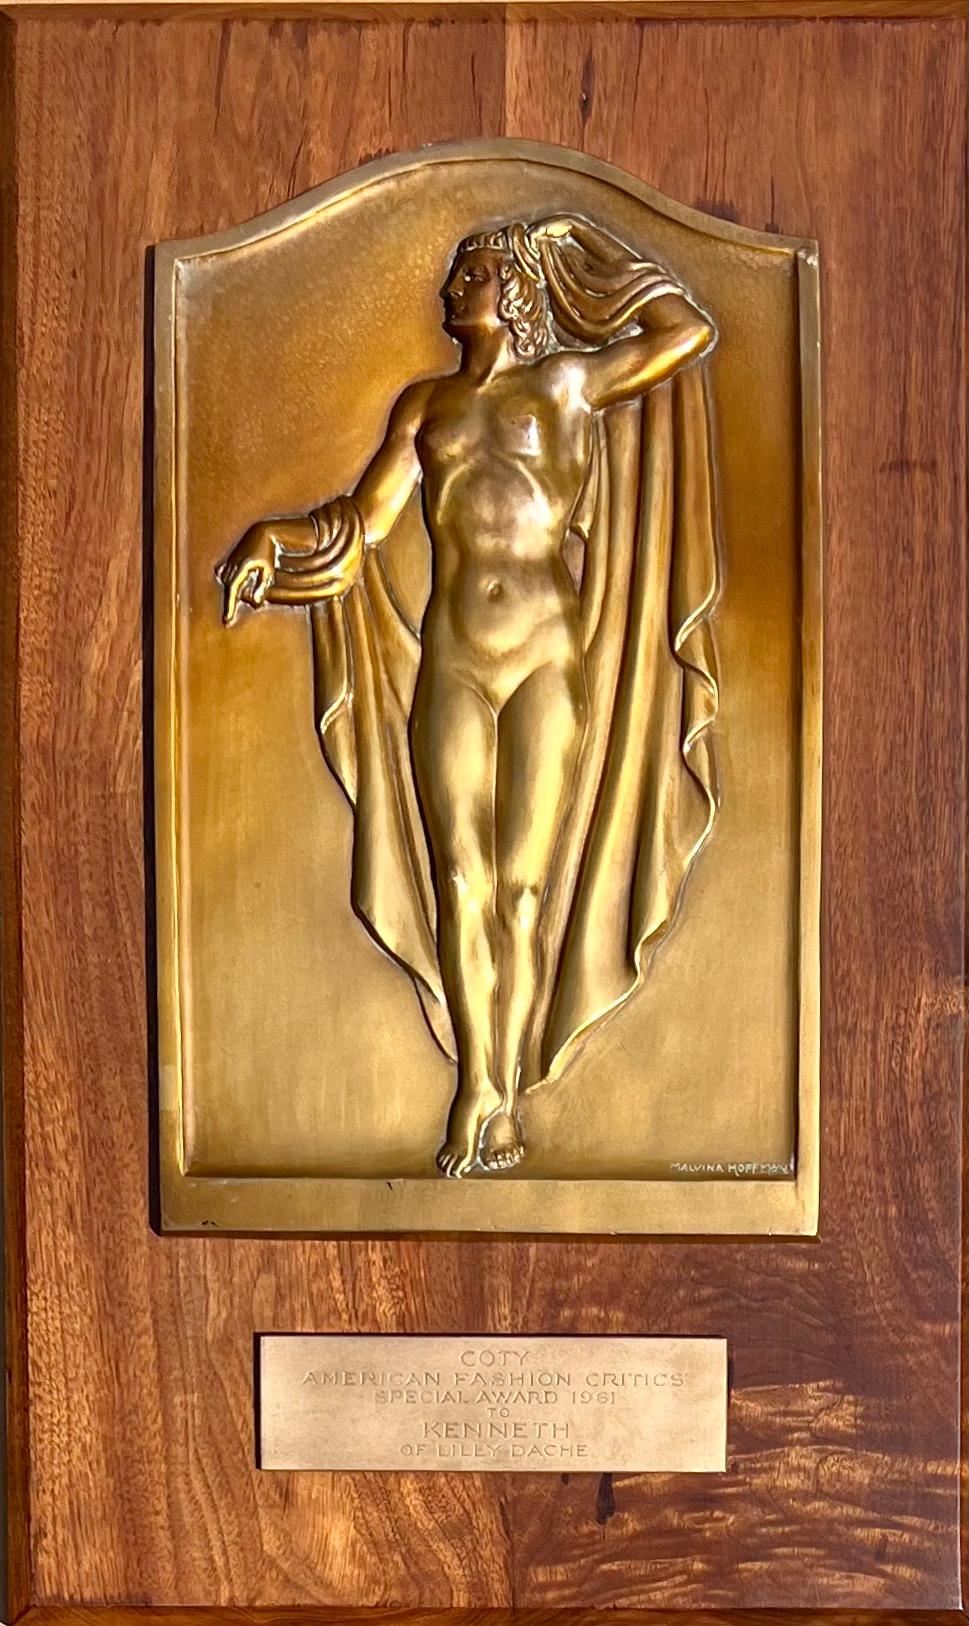 Plaque du prix Coty 1961 Kenneth  Coiffeuse Jacqueline Onassis Bronze Fashion - Marron Figurative Sculpture par Malvina Hoffman